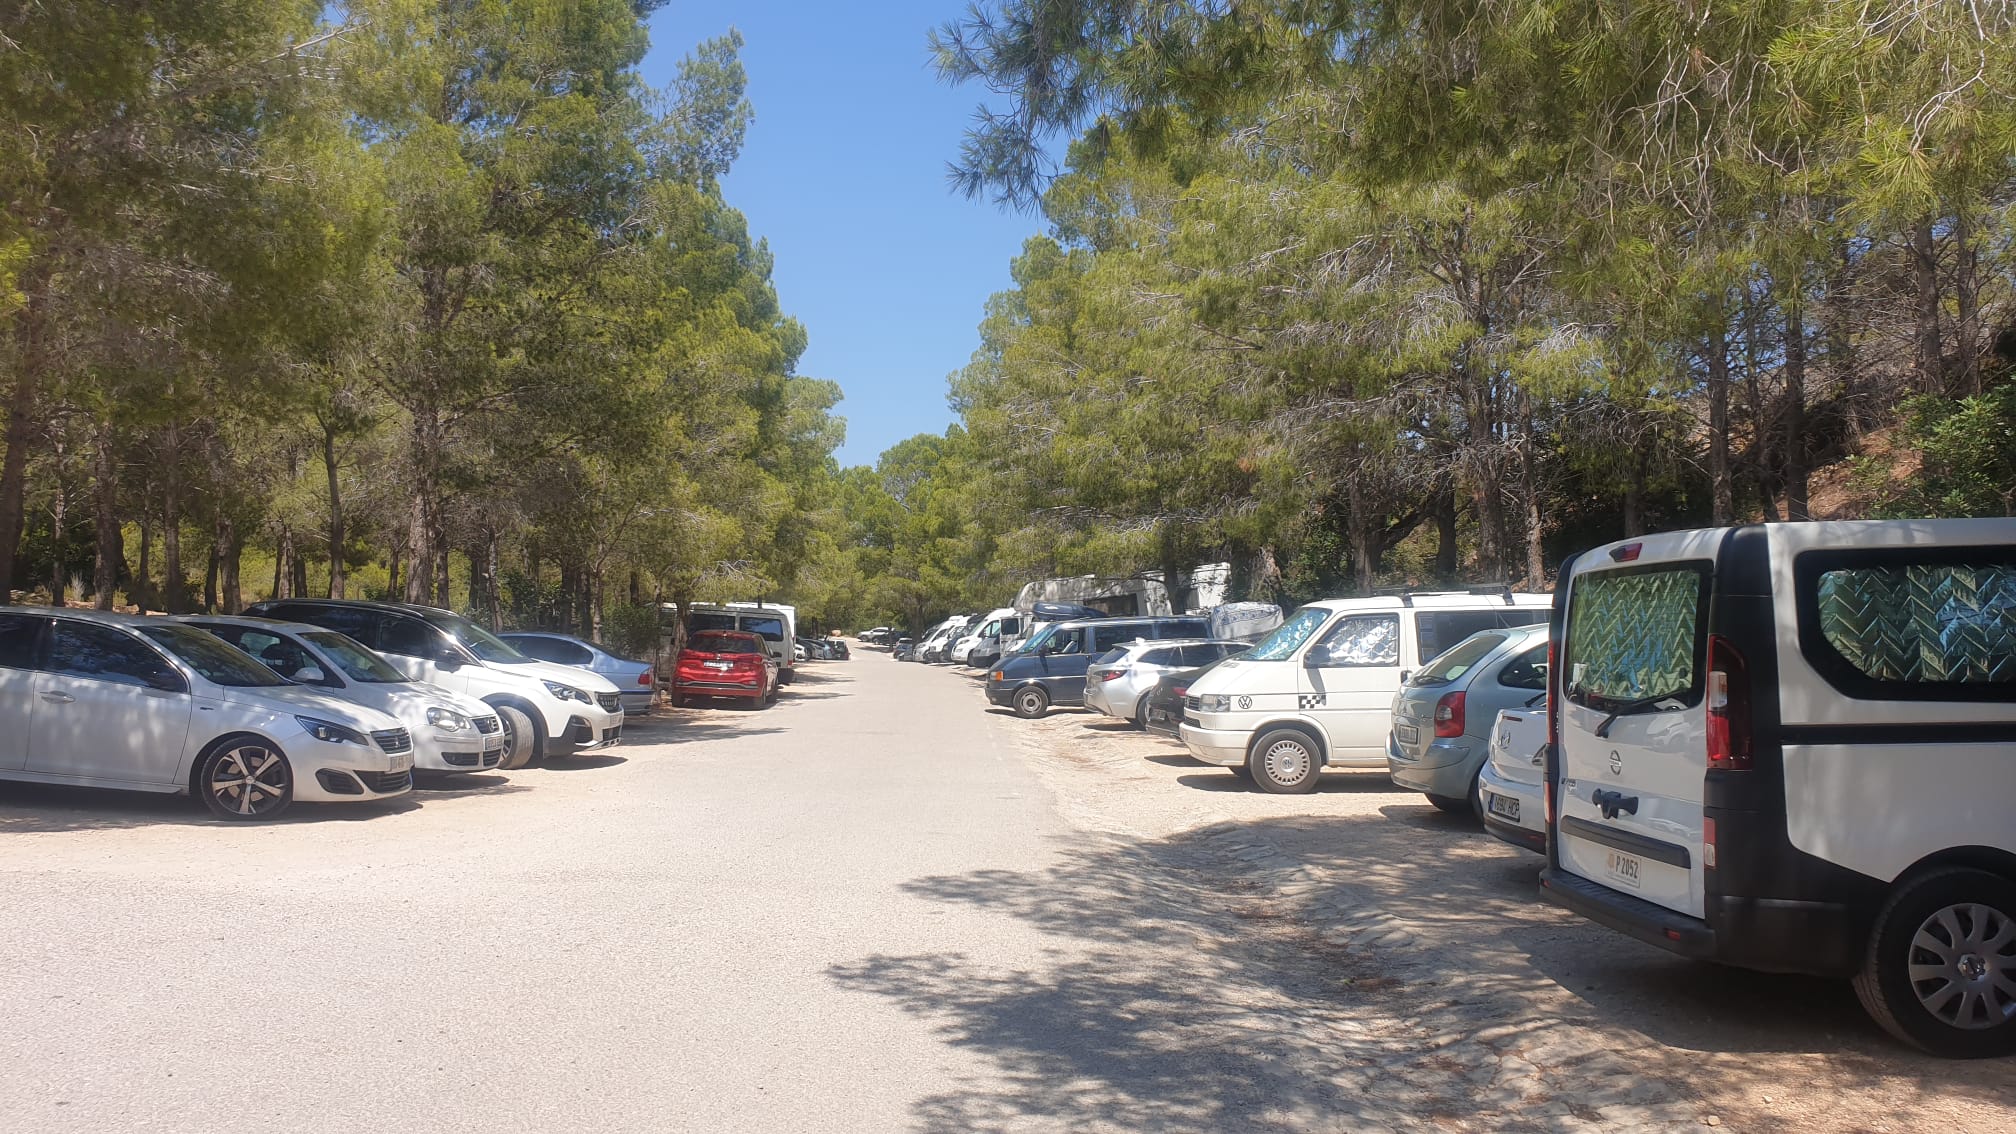 Els aparcaments de la zona de la platja del Torn tanquen a les nits com a mesura de protecció de l’entorn natural i evitar les conductes incíviques